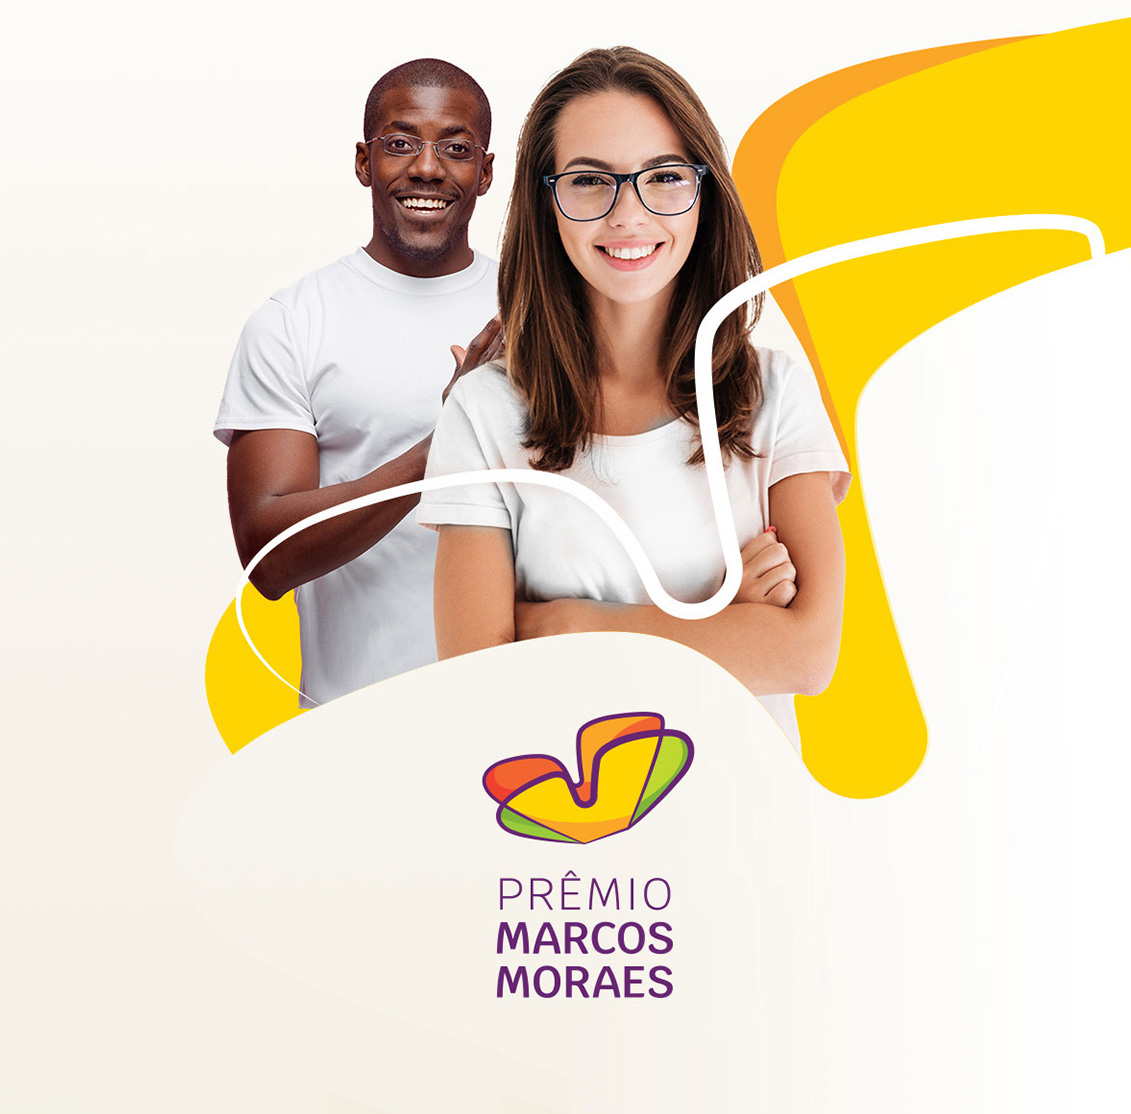 Prêmio Marcos Moraes divulga vencedores no dia 22 de setembro